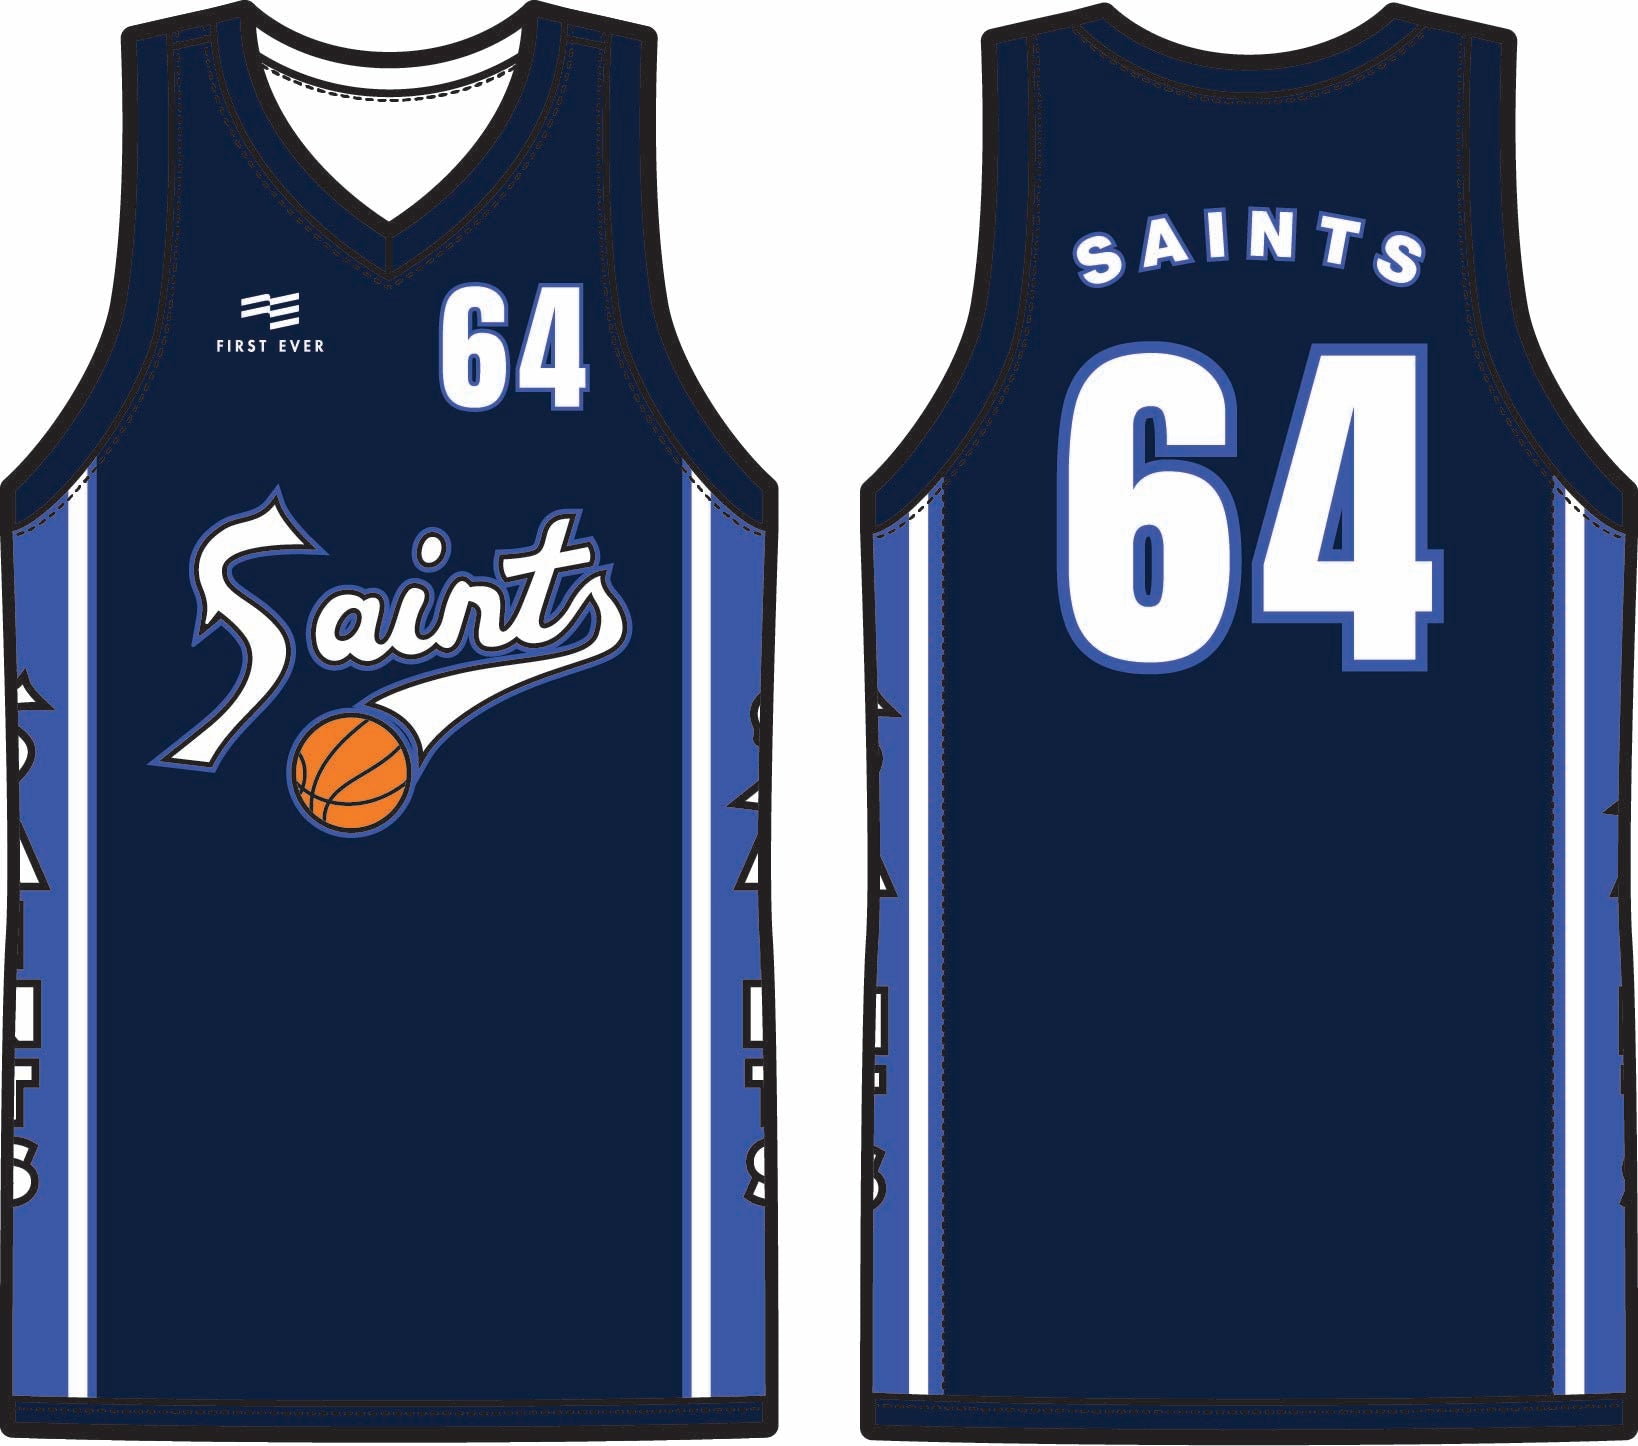  Saints Jerseys - Pro Quality Jerseys Ready to